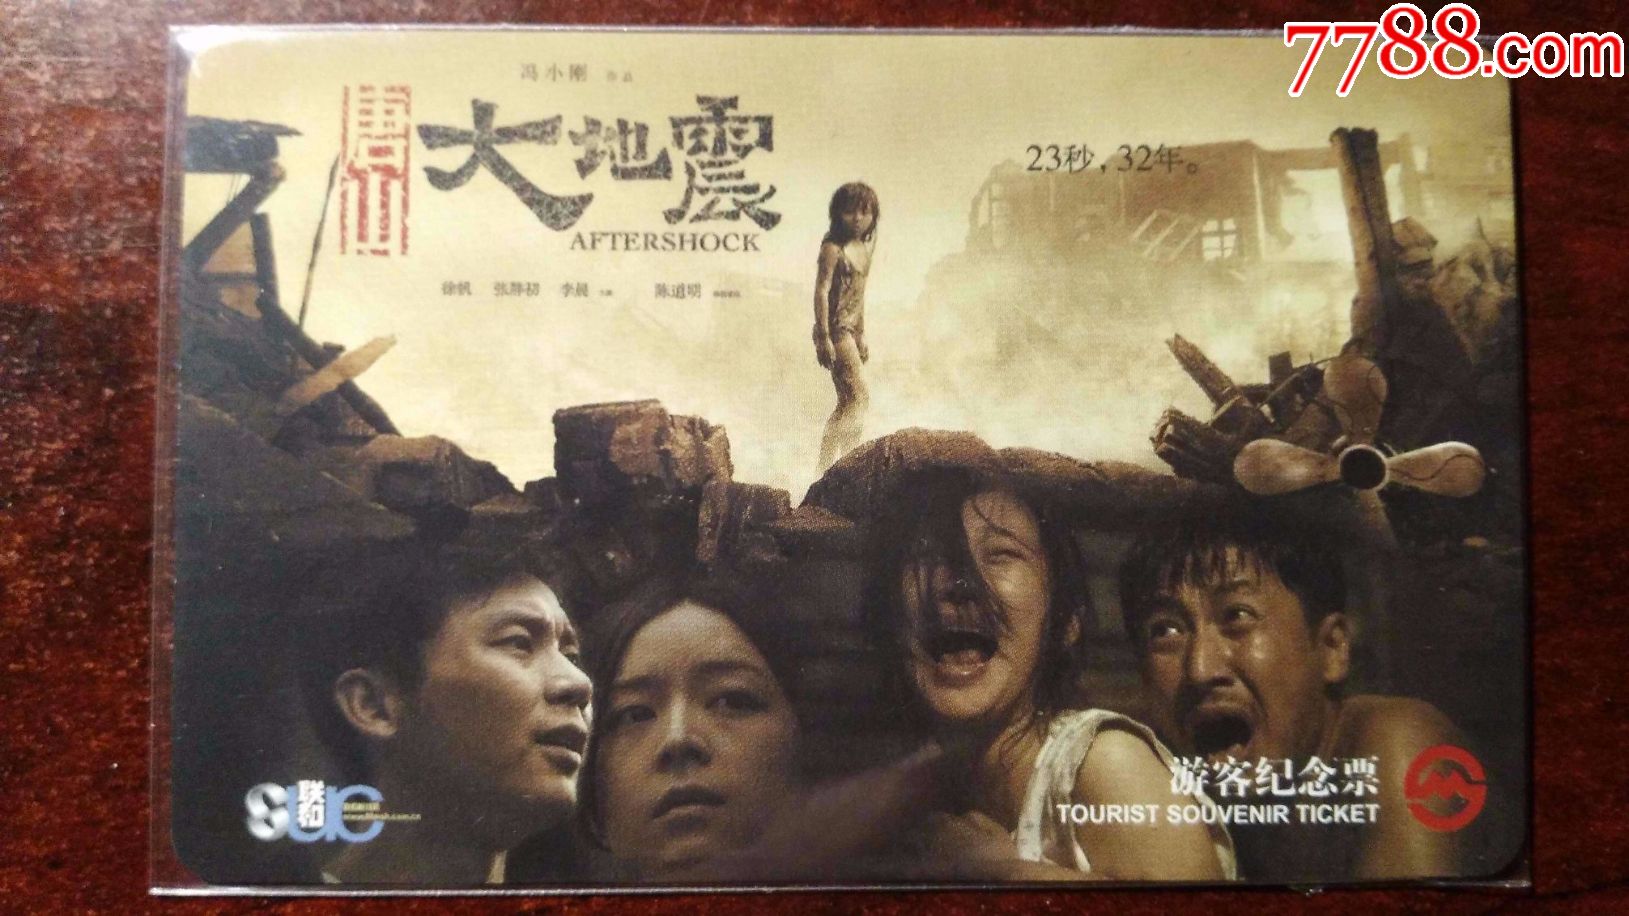 上海地铁卡:电影海报唐山大地震